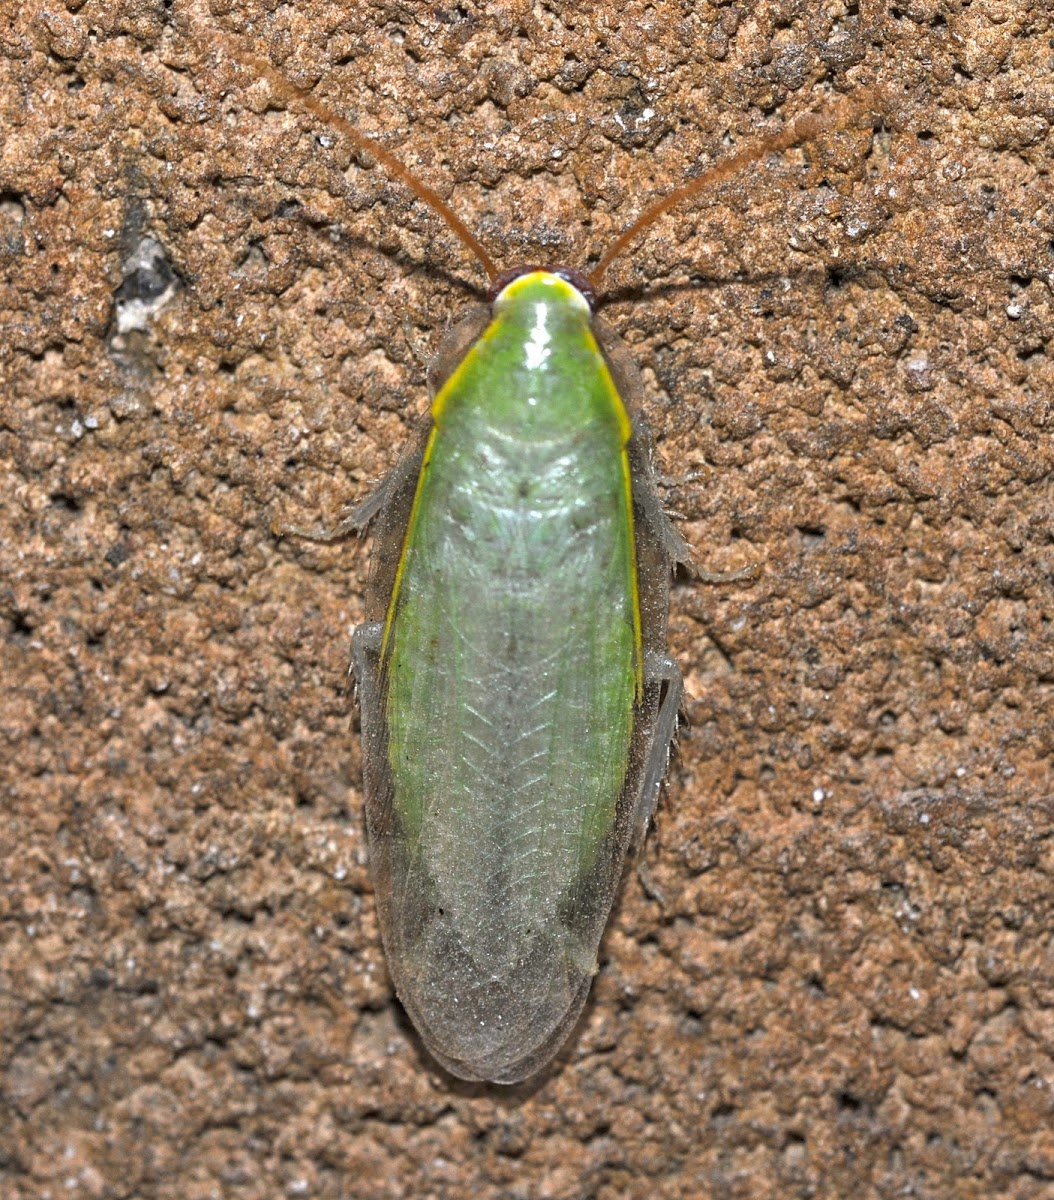 Green Blaberid Cockroach